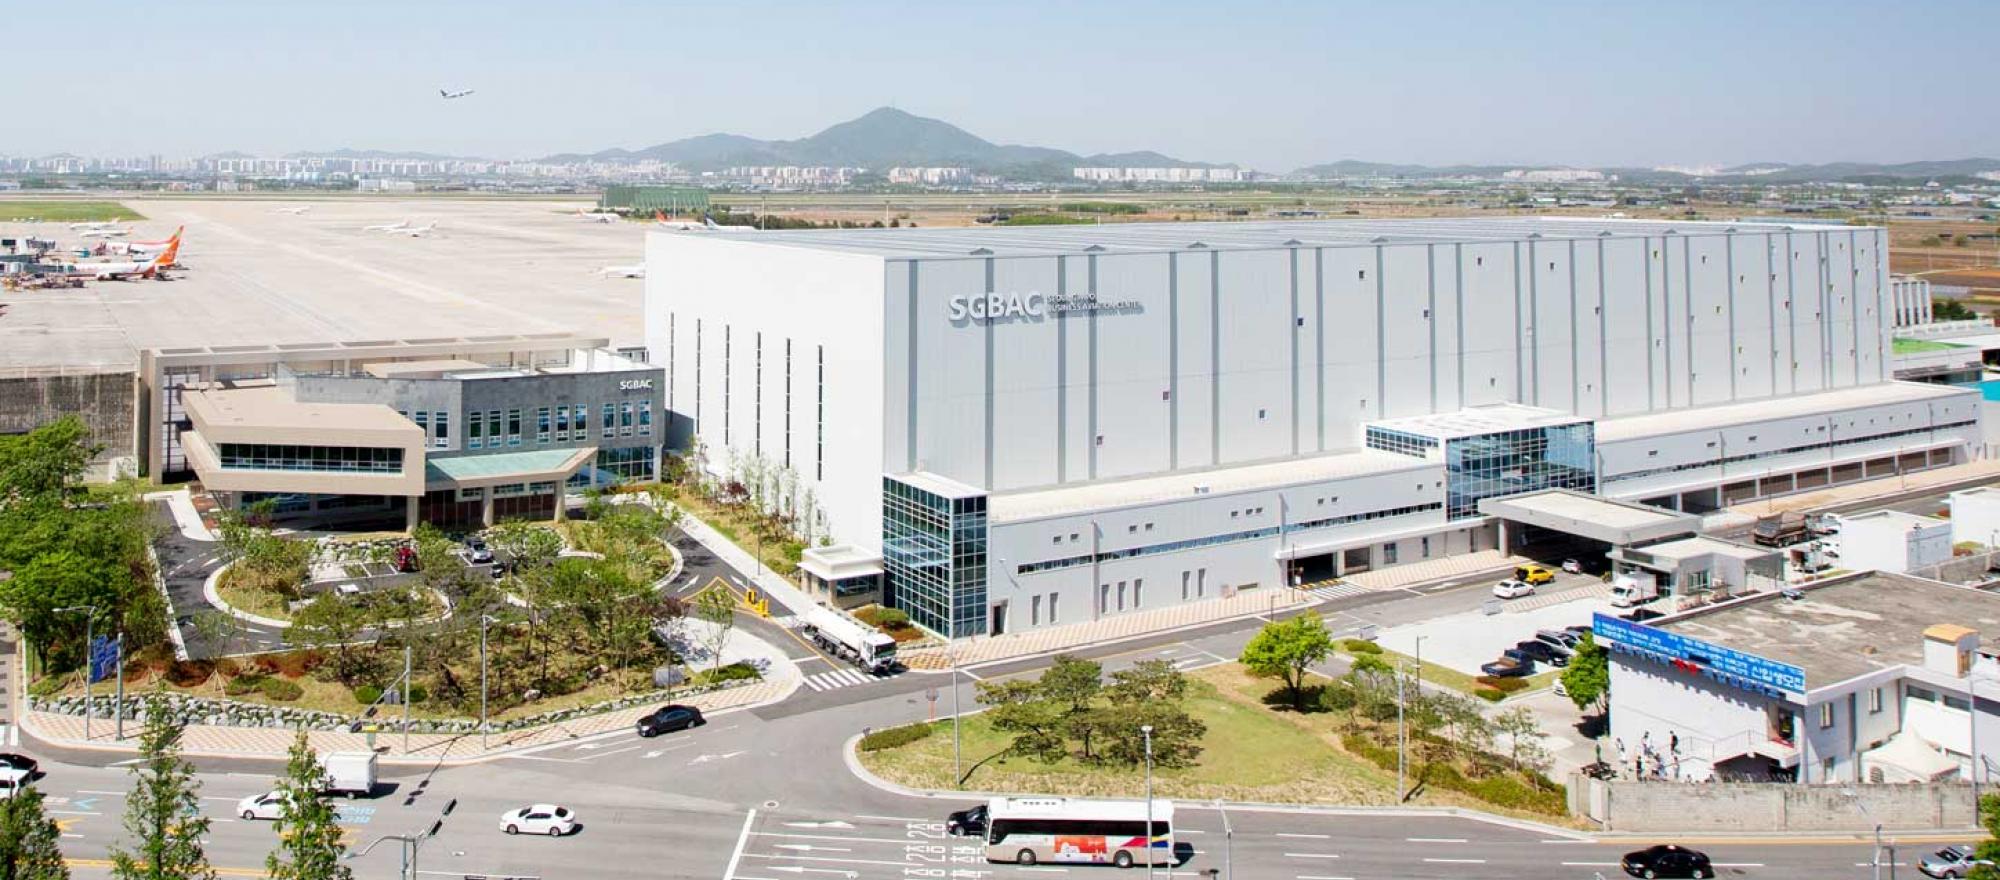 Seoul Gimpo Business Aviation Center